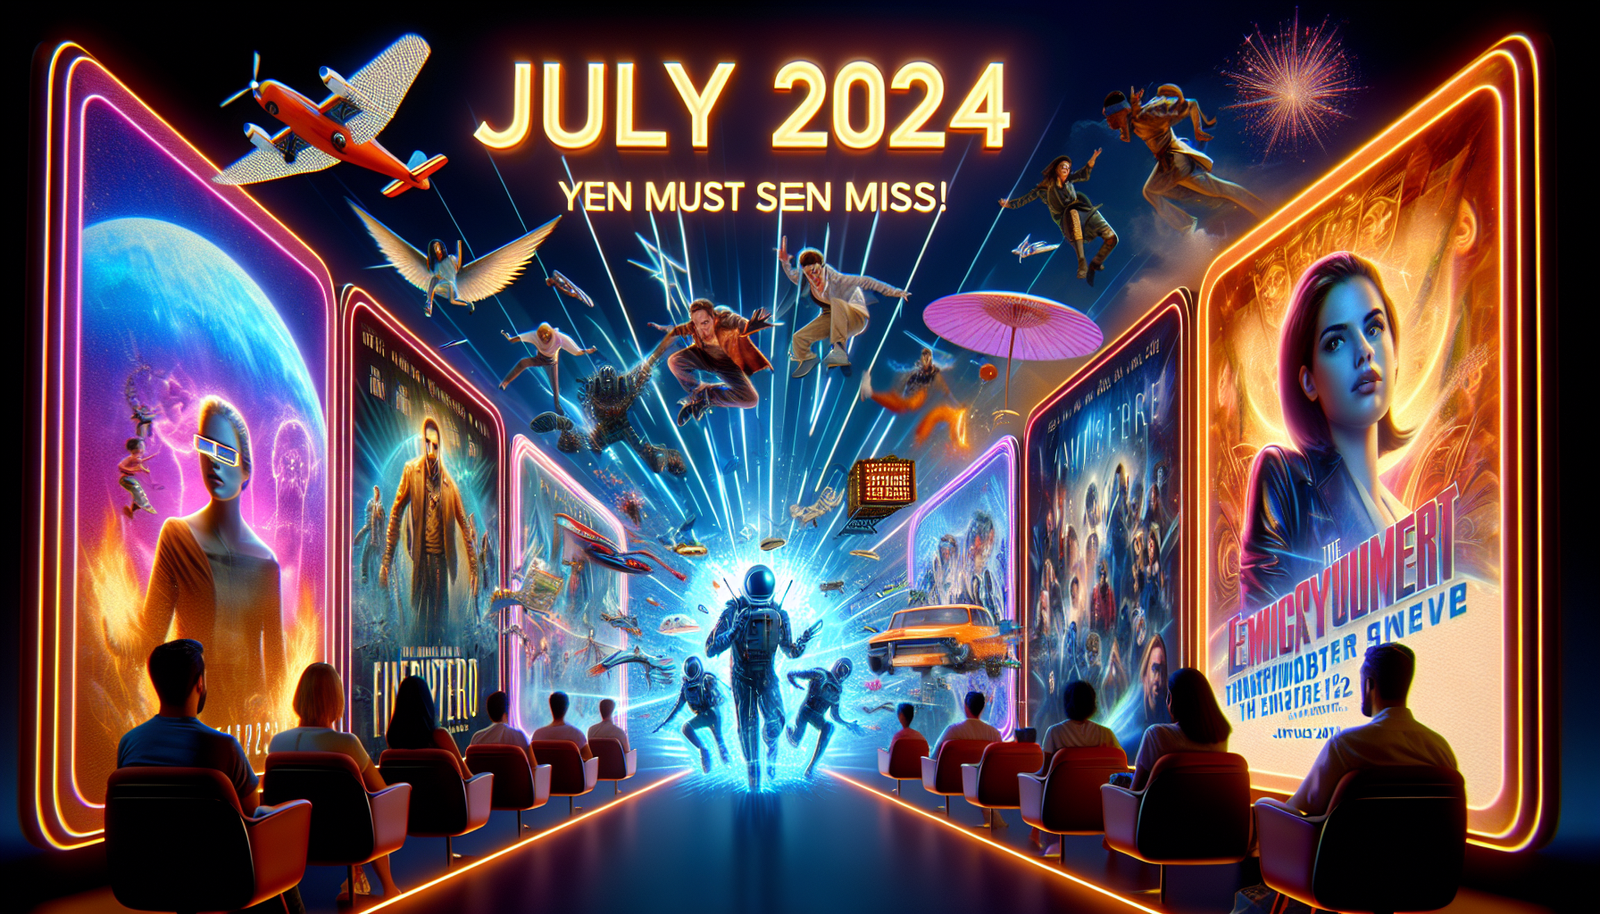 découvrez les incroyables nouvelles émissions et films qui arriveront sur Netflix en juillet 2024 et que vous ne pouvez tout simplement pas vous permettre de manquer. préparez-vous à être surpris !